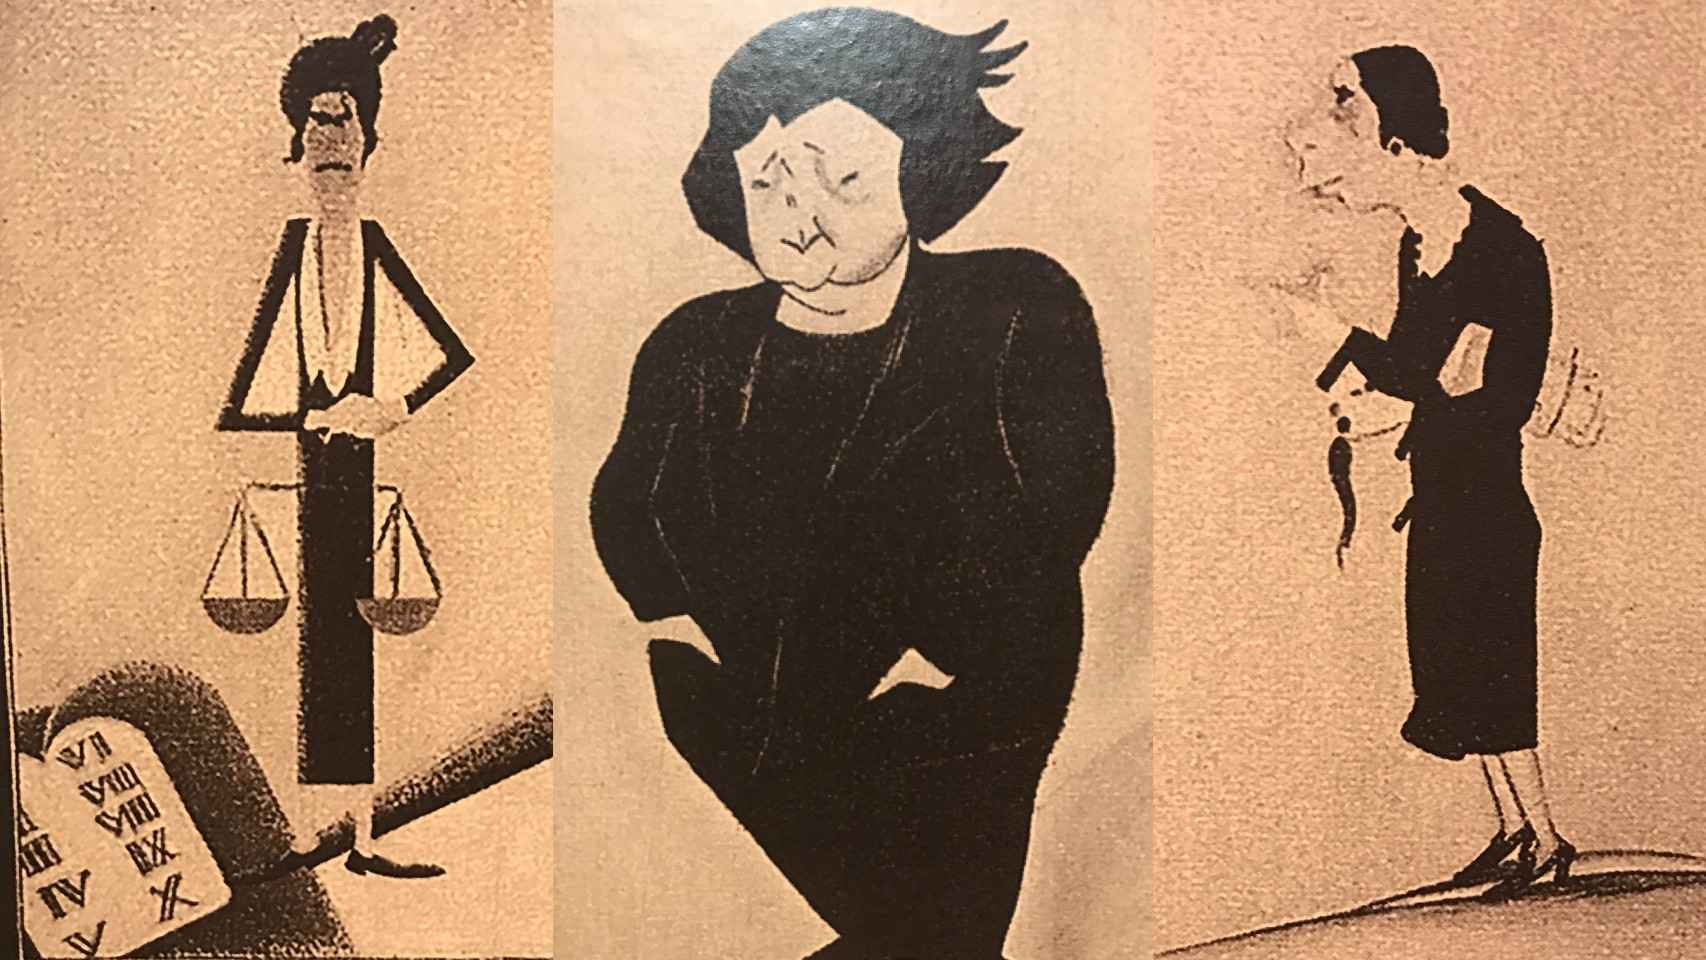 Caricaturas de Mujeres del Lyceum Club. Román Bonet 'Bon' (1927). De izda. a dcha. Victoria Kent, señora de Arcos e Isabel Oyarzábal.